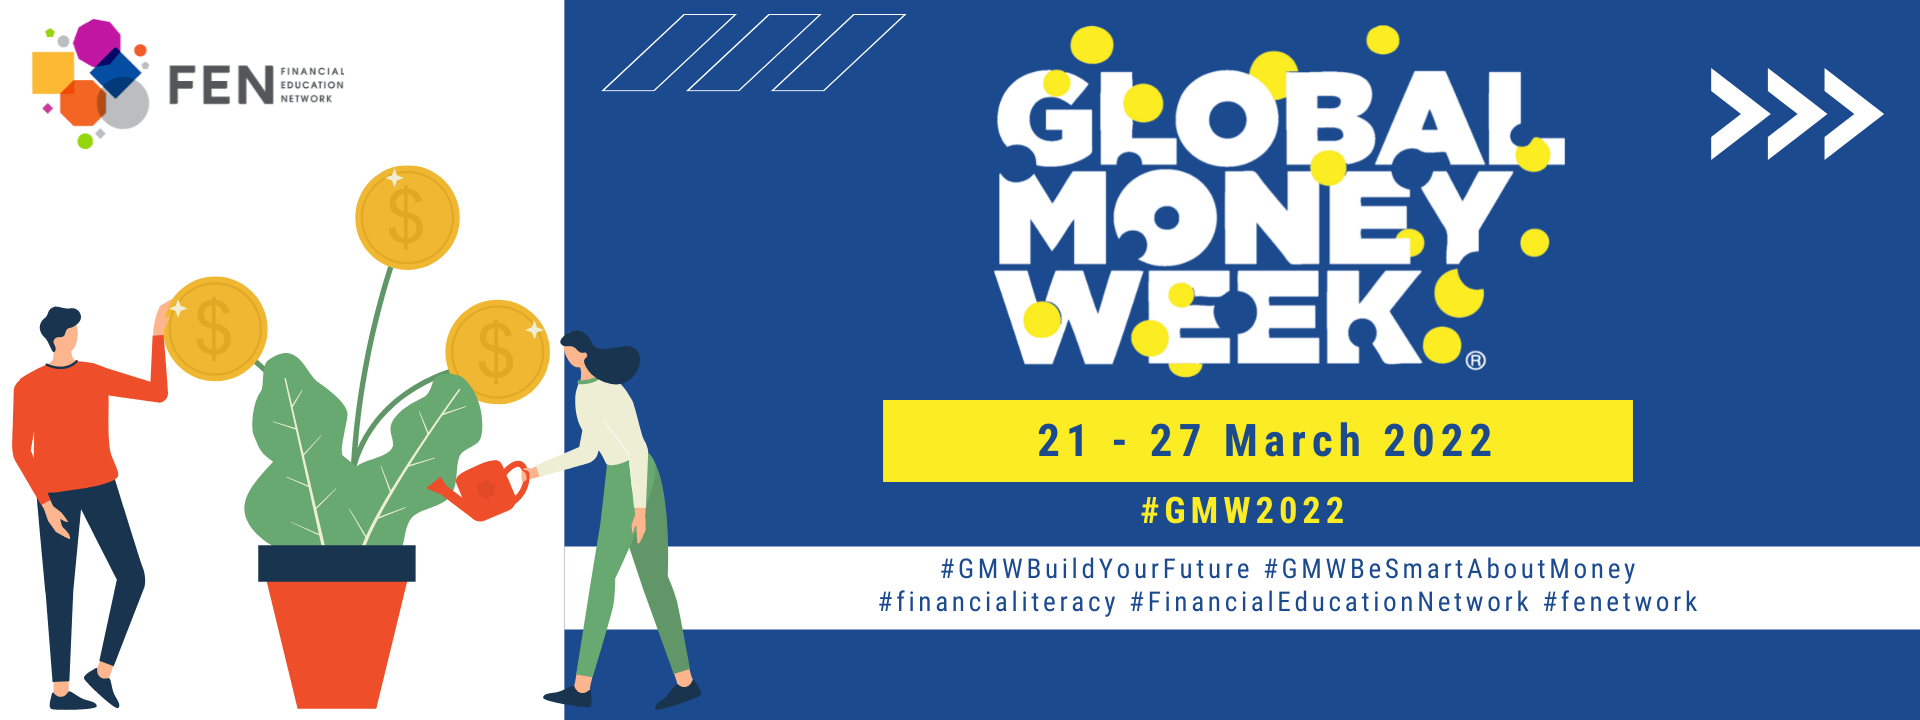 Faculdade Fipecafi - A Faculdade FIPECAFI sediará um dos eventos  integrantes do Global Money Week (GMW) para o ano de 2022. O GMW é uma  campanha internacional de conscientização financeira organizada pela